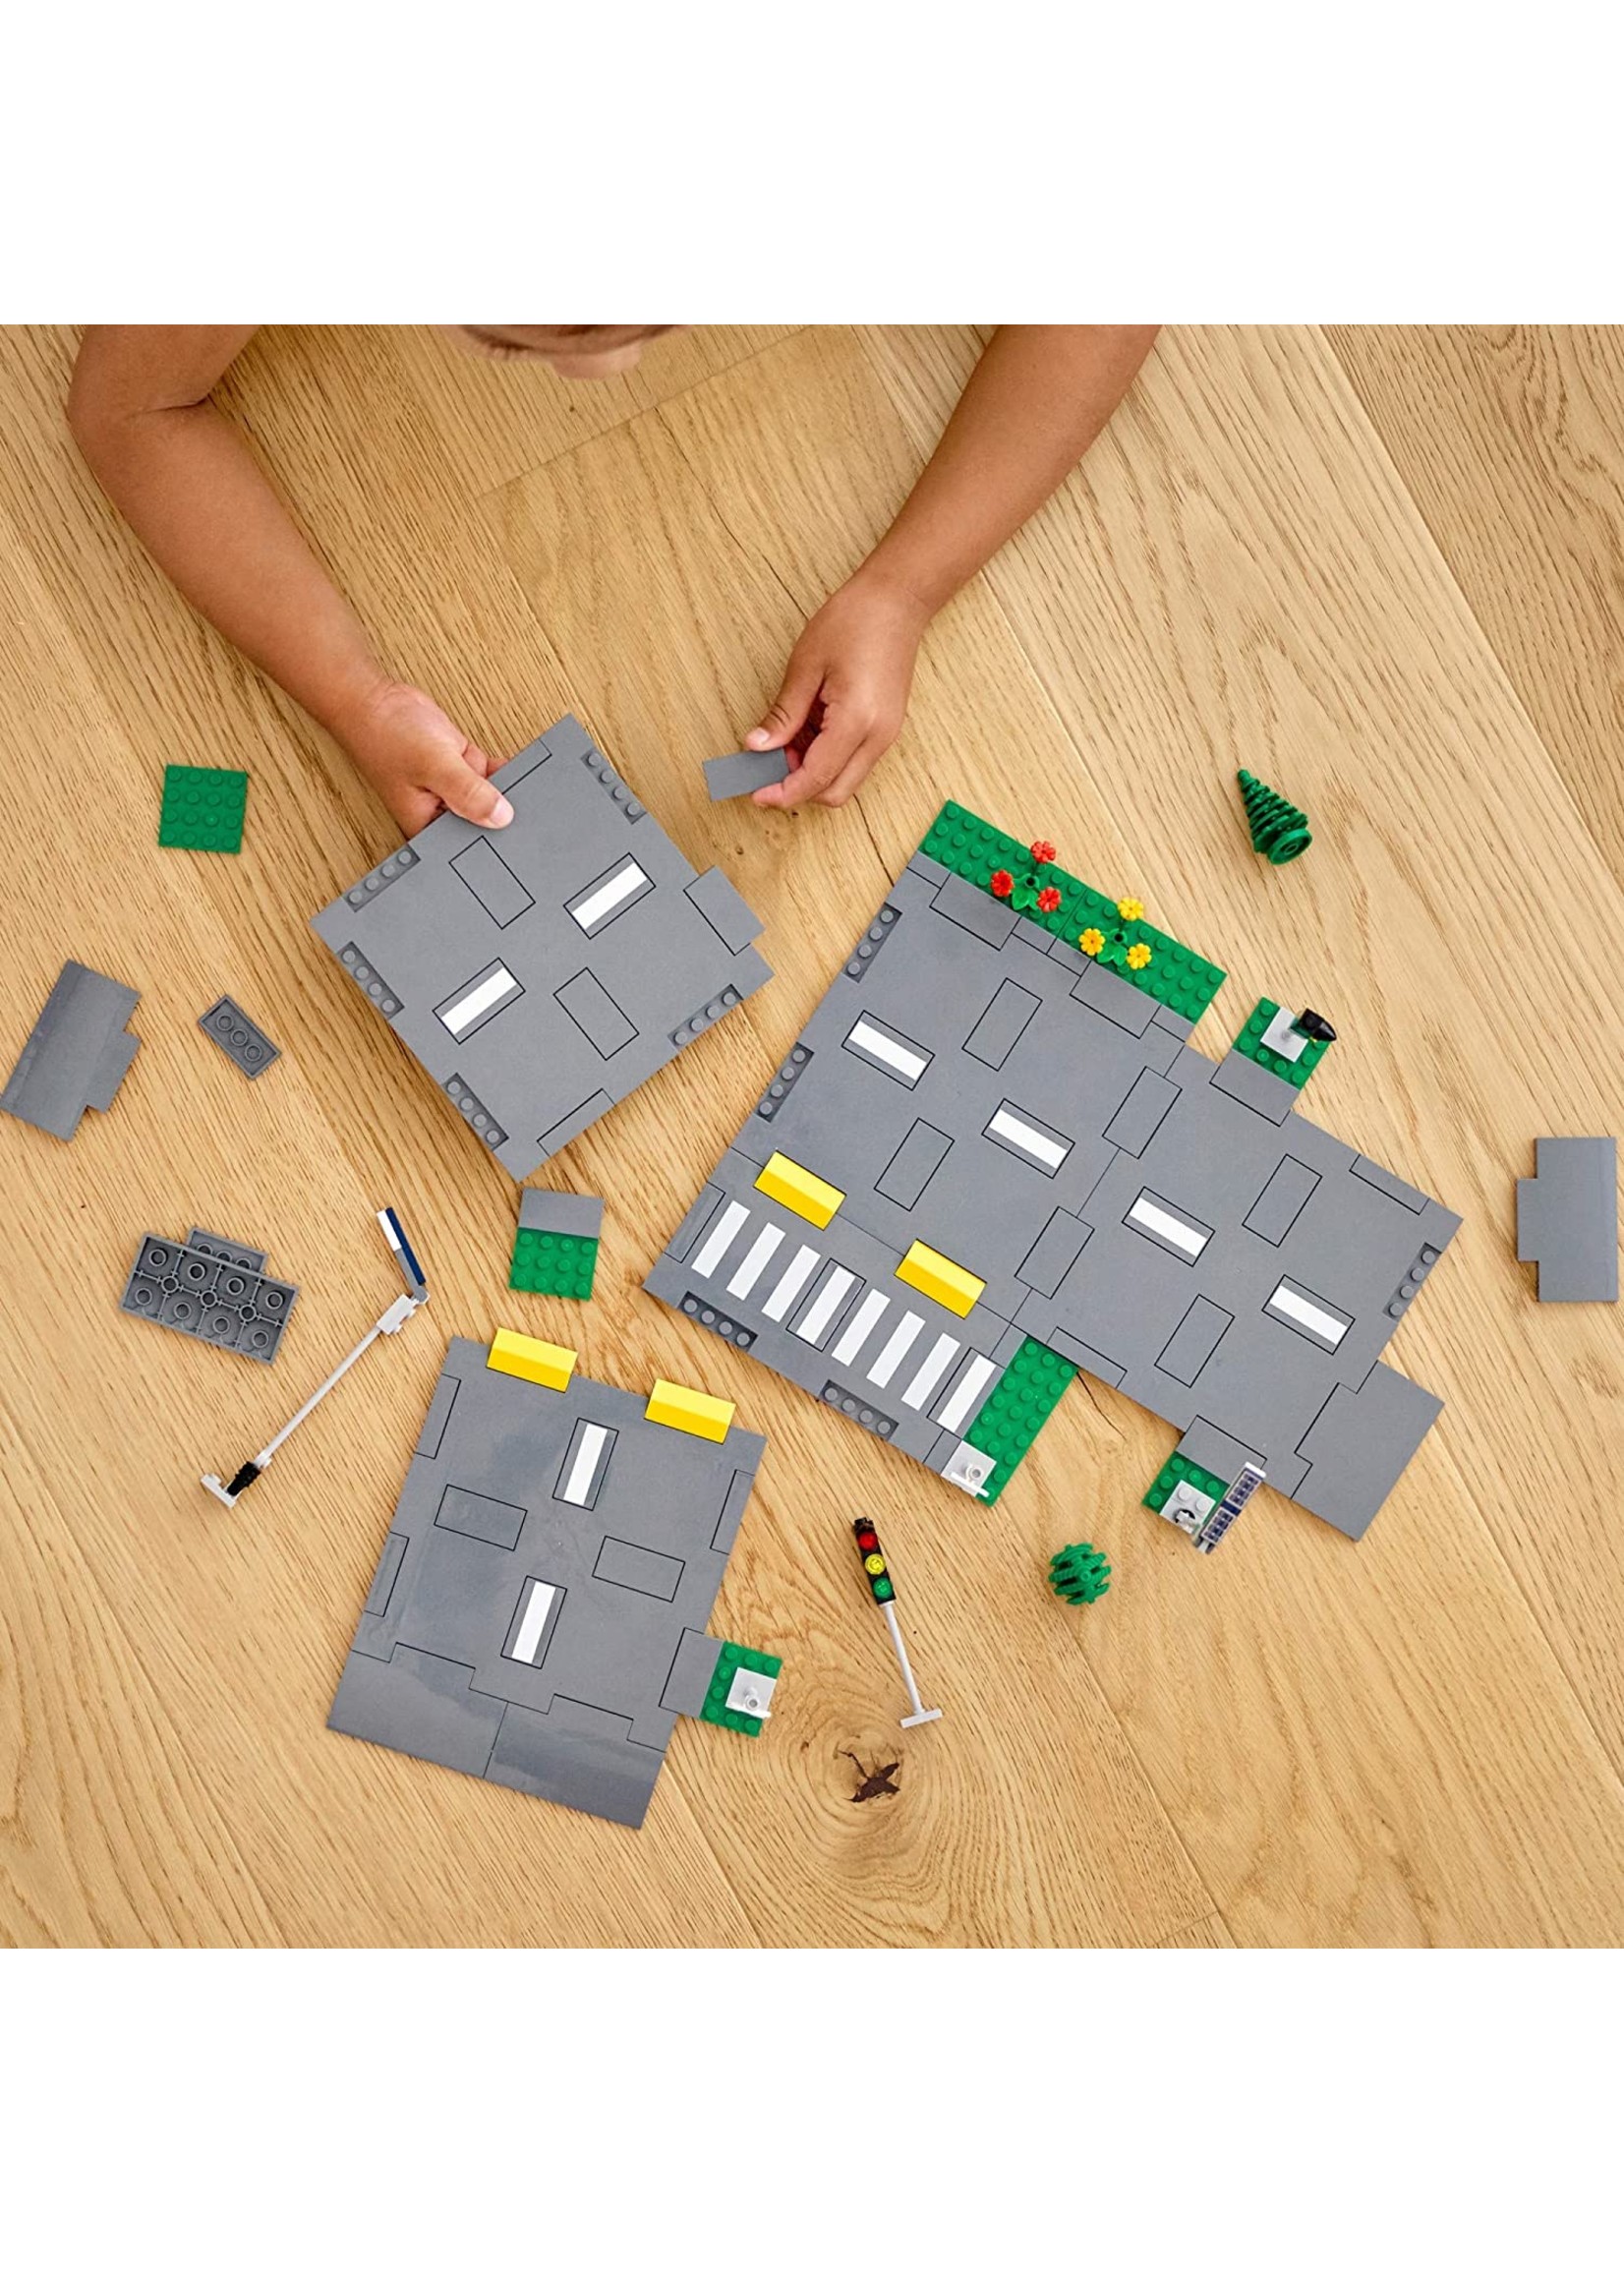 Lego City 60304 - Road Plates - Hub Hobby